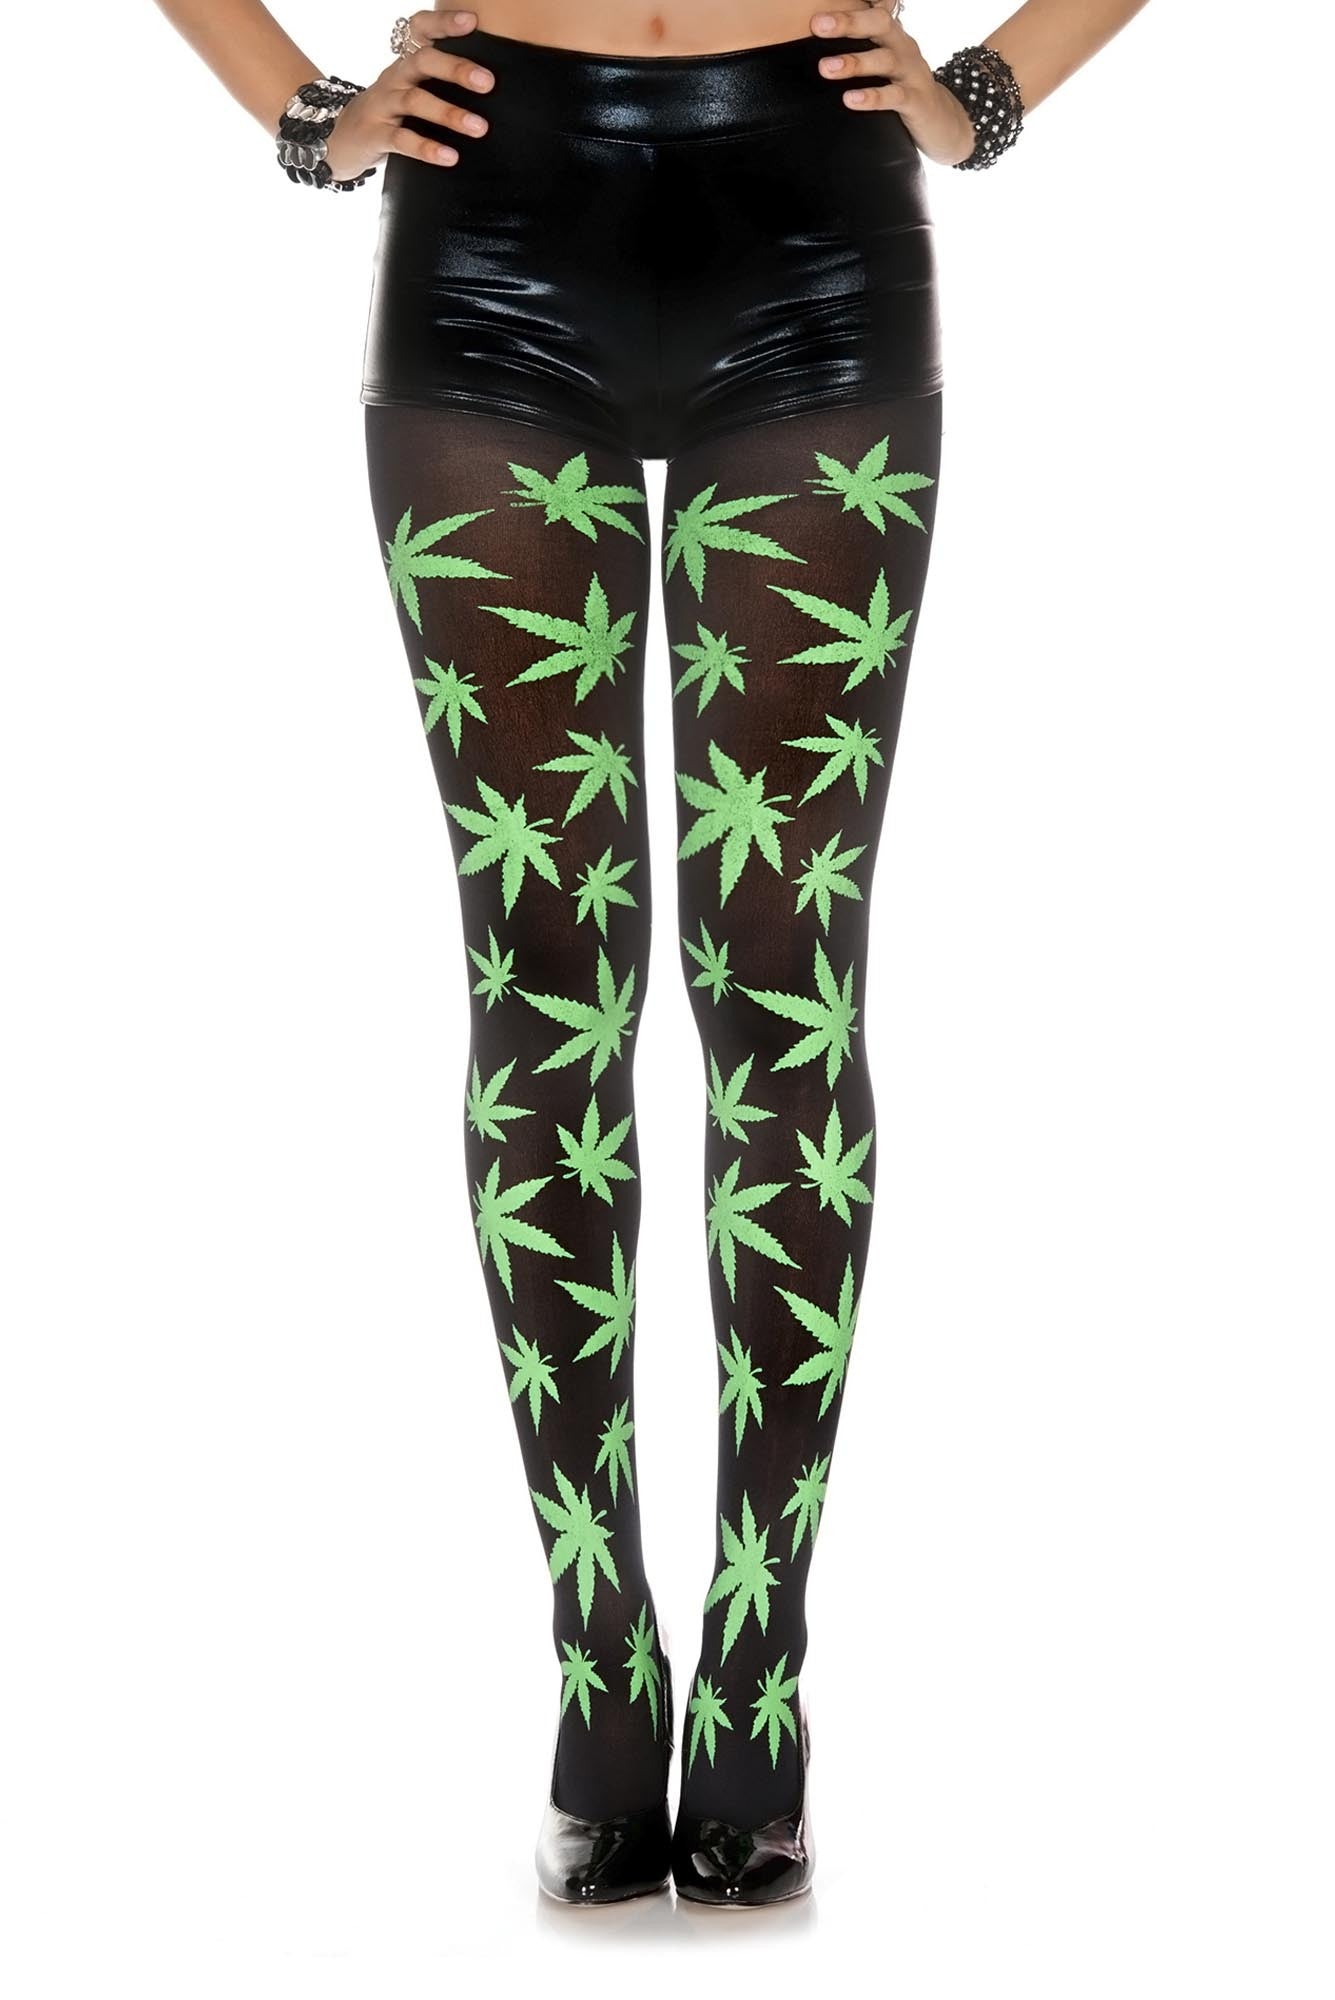 Marijuana Leaf Tights: Black & Green